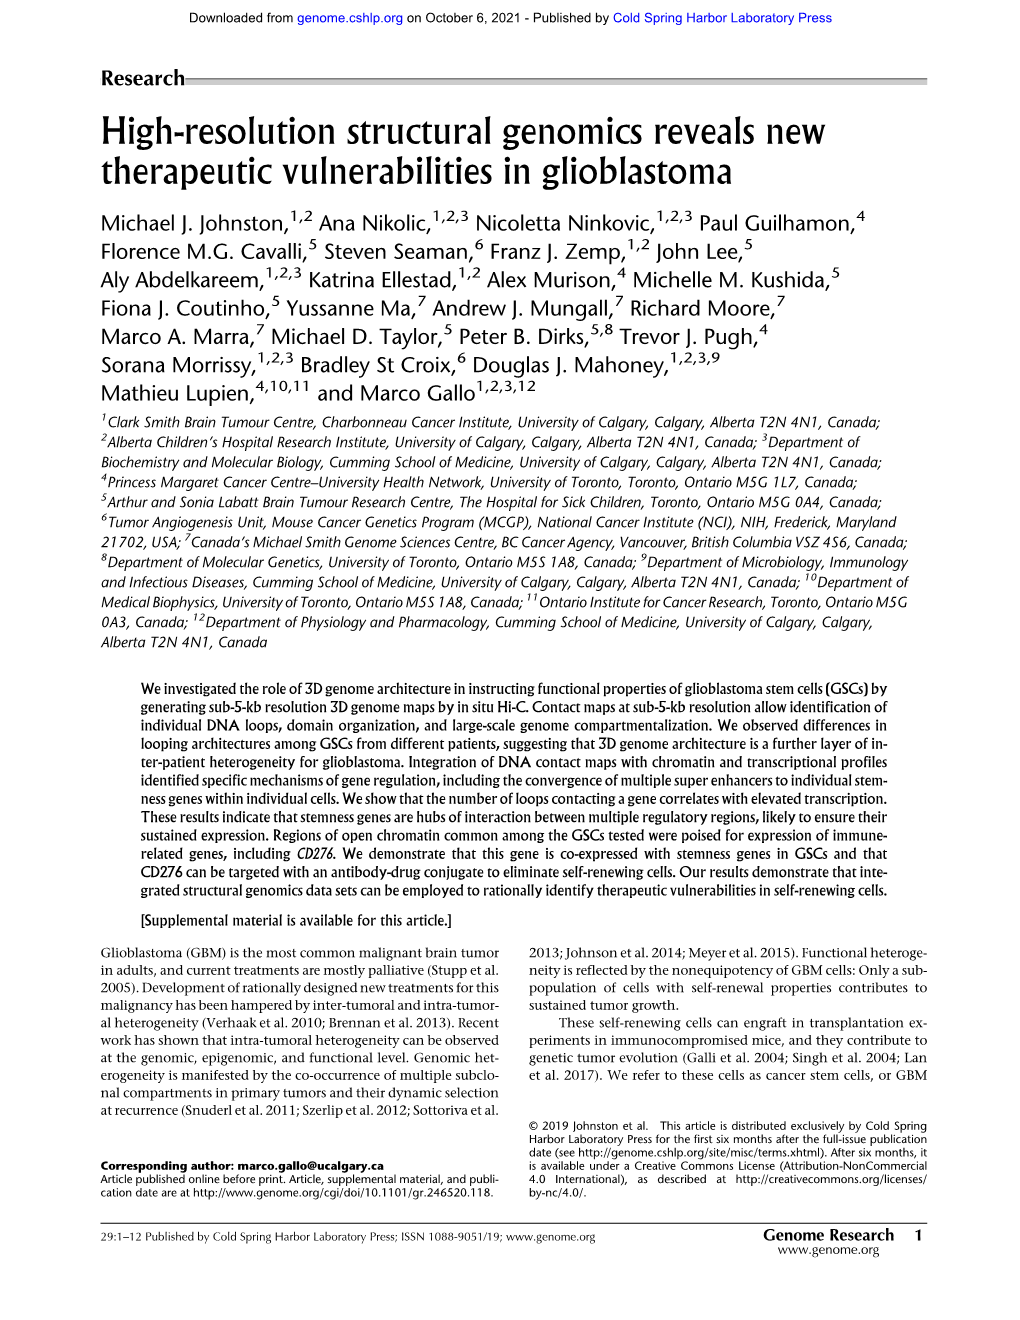 High-Resolution Structural Genomics Reveals New Therapeutic Vulnerabilities in Glioblastoma